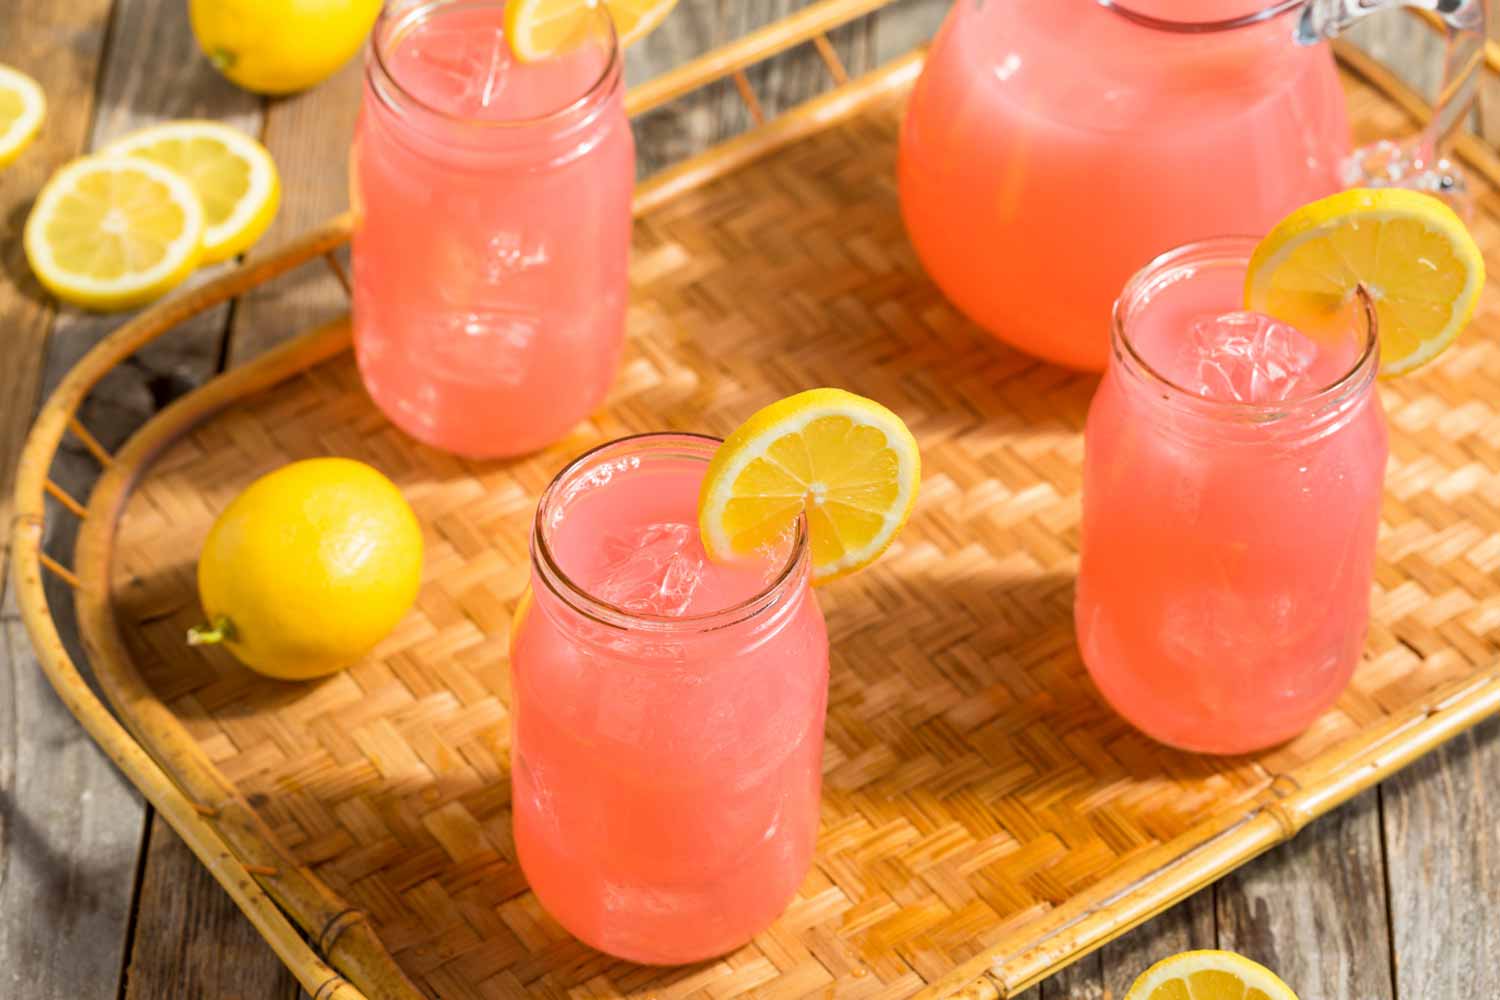 Pink lemonade e receitas saudáveis: é possível um menu natural e  cor-de-rosa? - Gastronomia Carioca